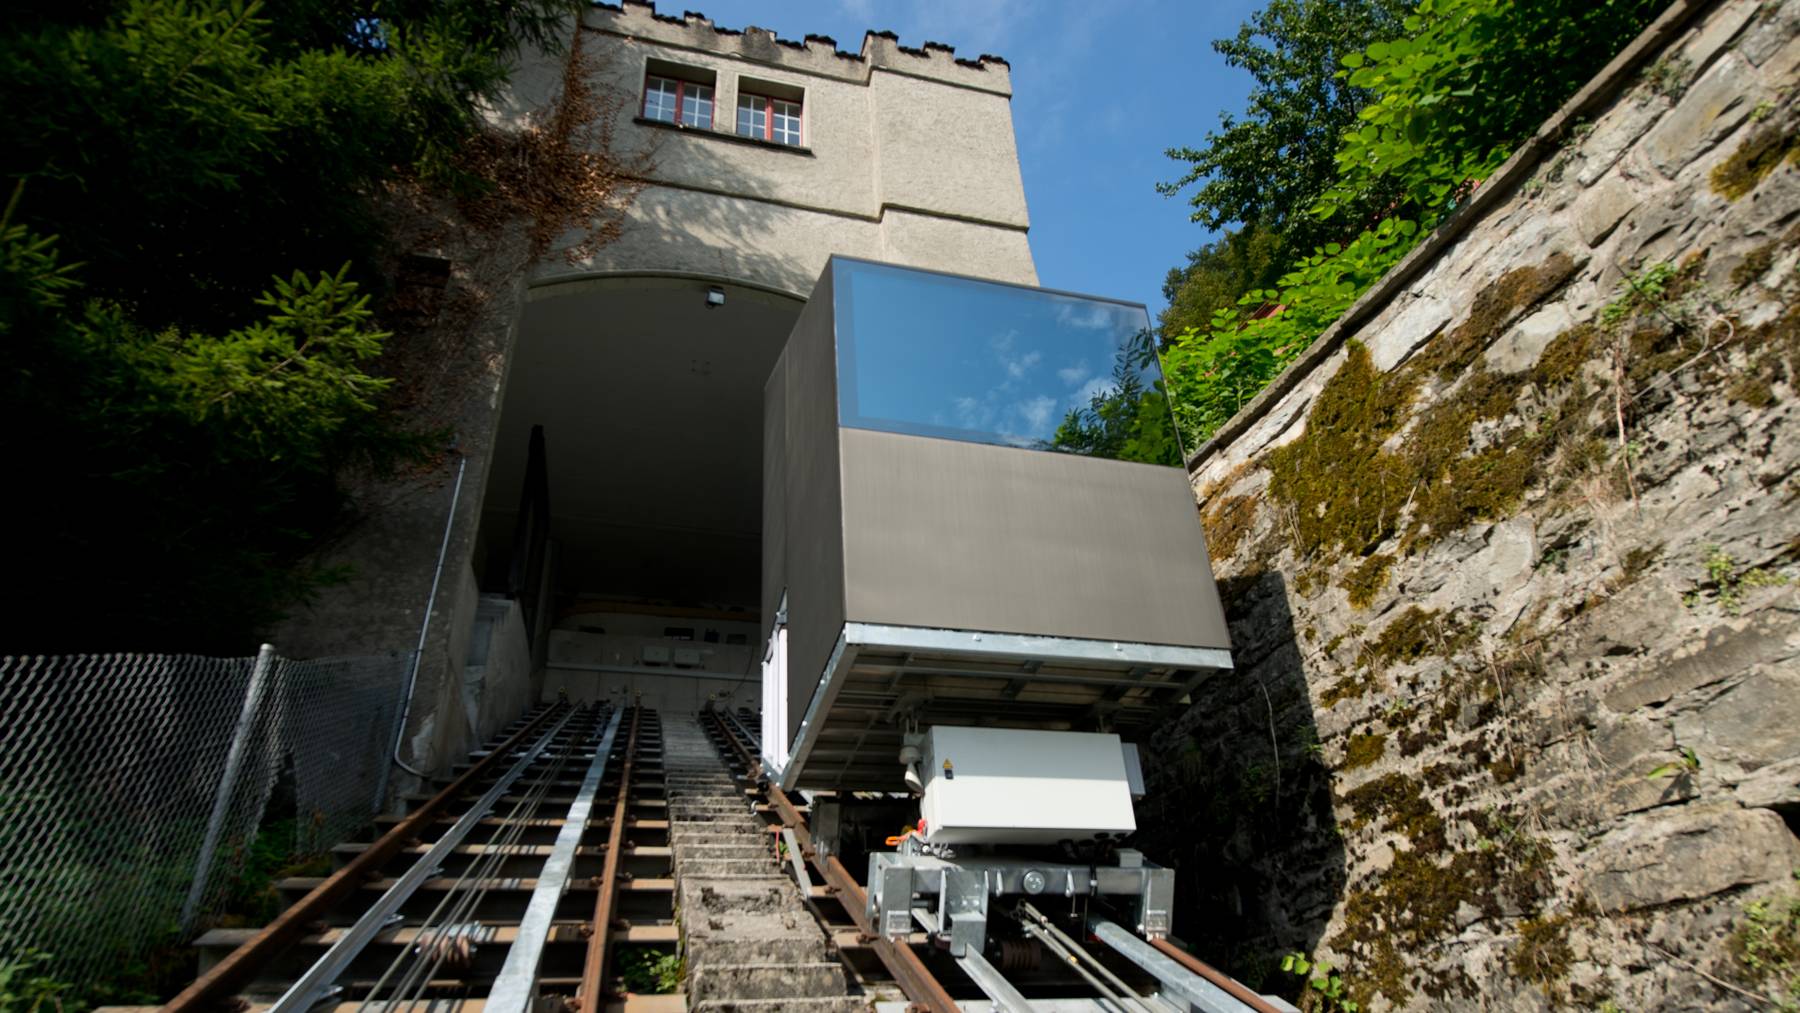 Die zwei neuen Kabinen der Gütschbahn wurden heute angefahren und auf den Schienen montiert. // Gütschbahn Luzern // Gütsch-Bahn